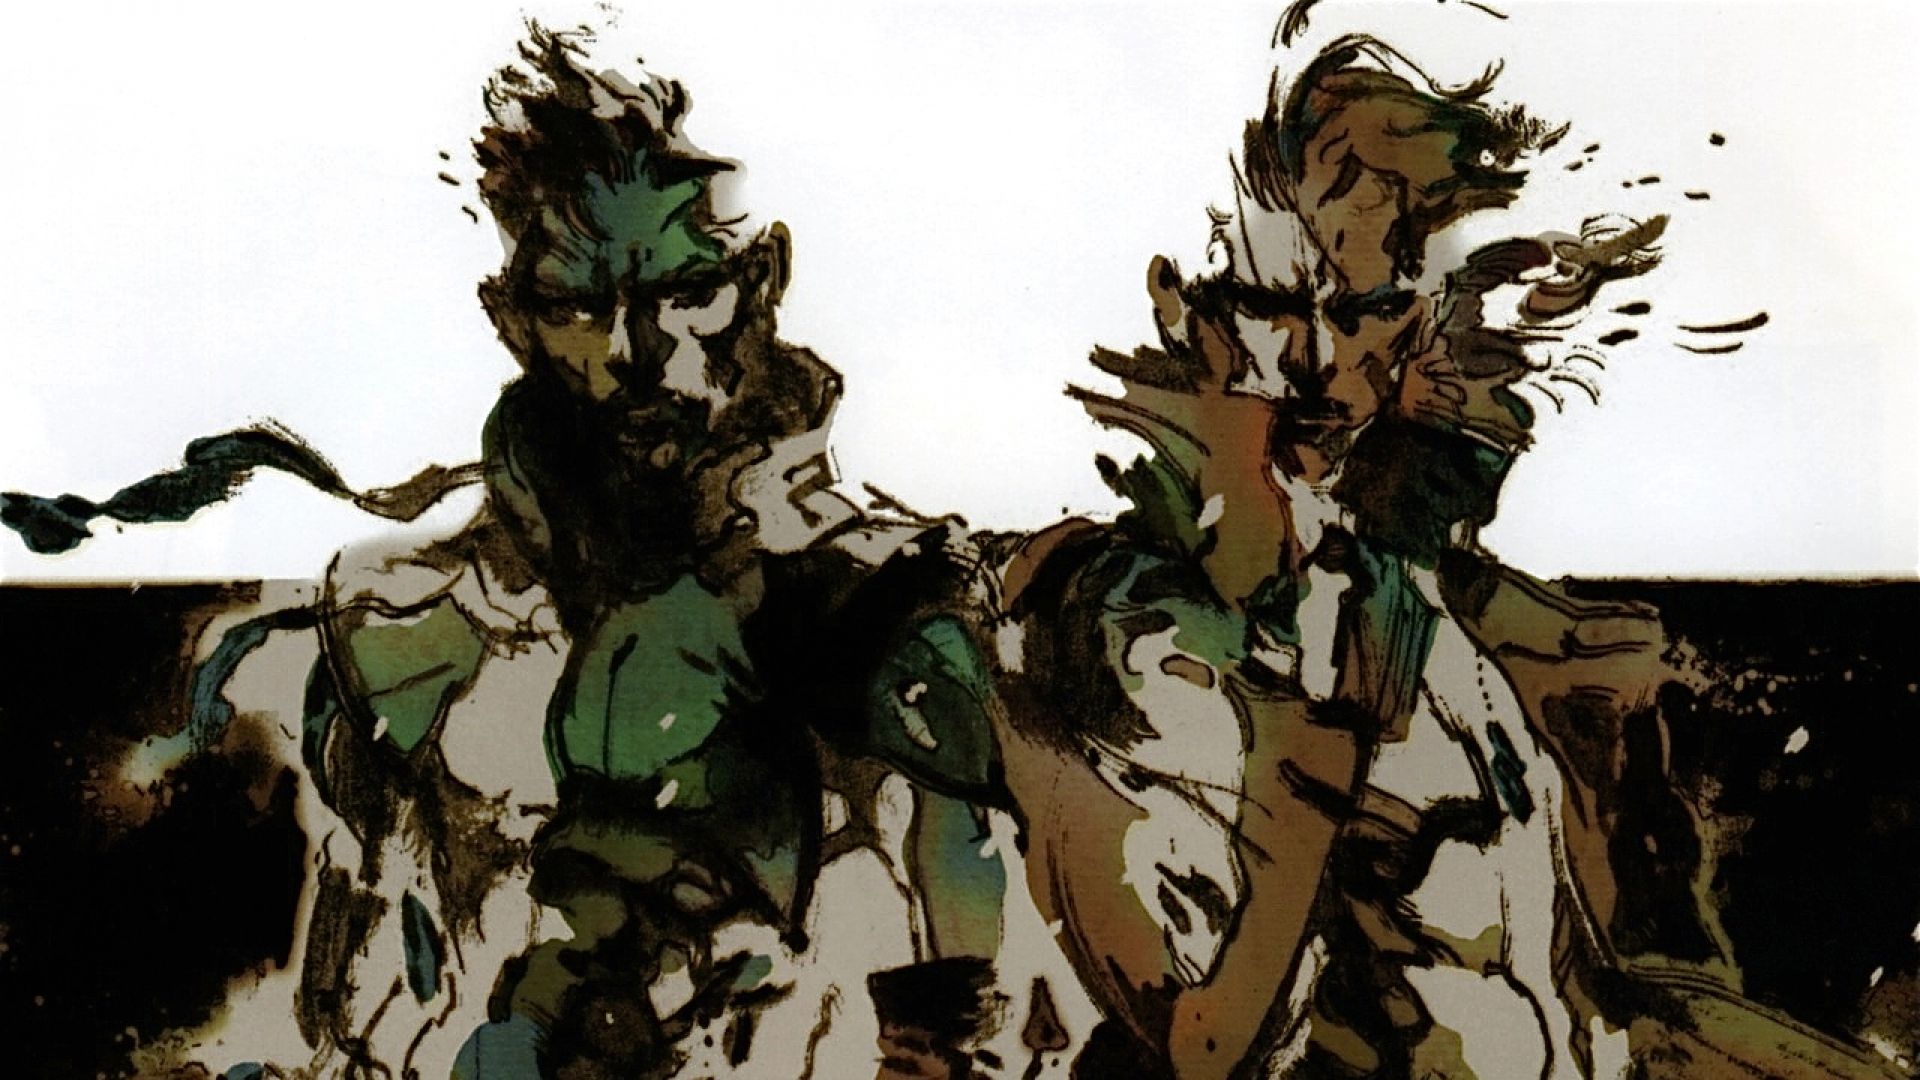 Metal Gear Solid HD Wallpaper | 1920x1080 | ID:27090